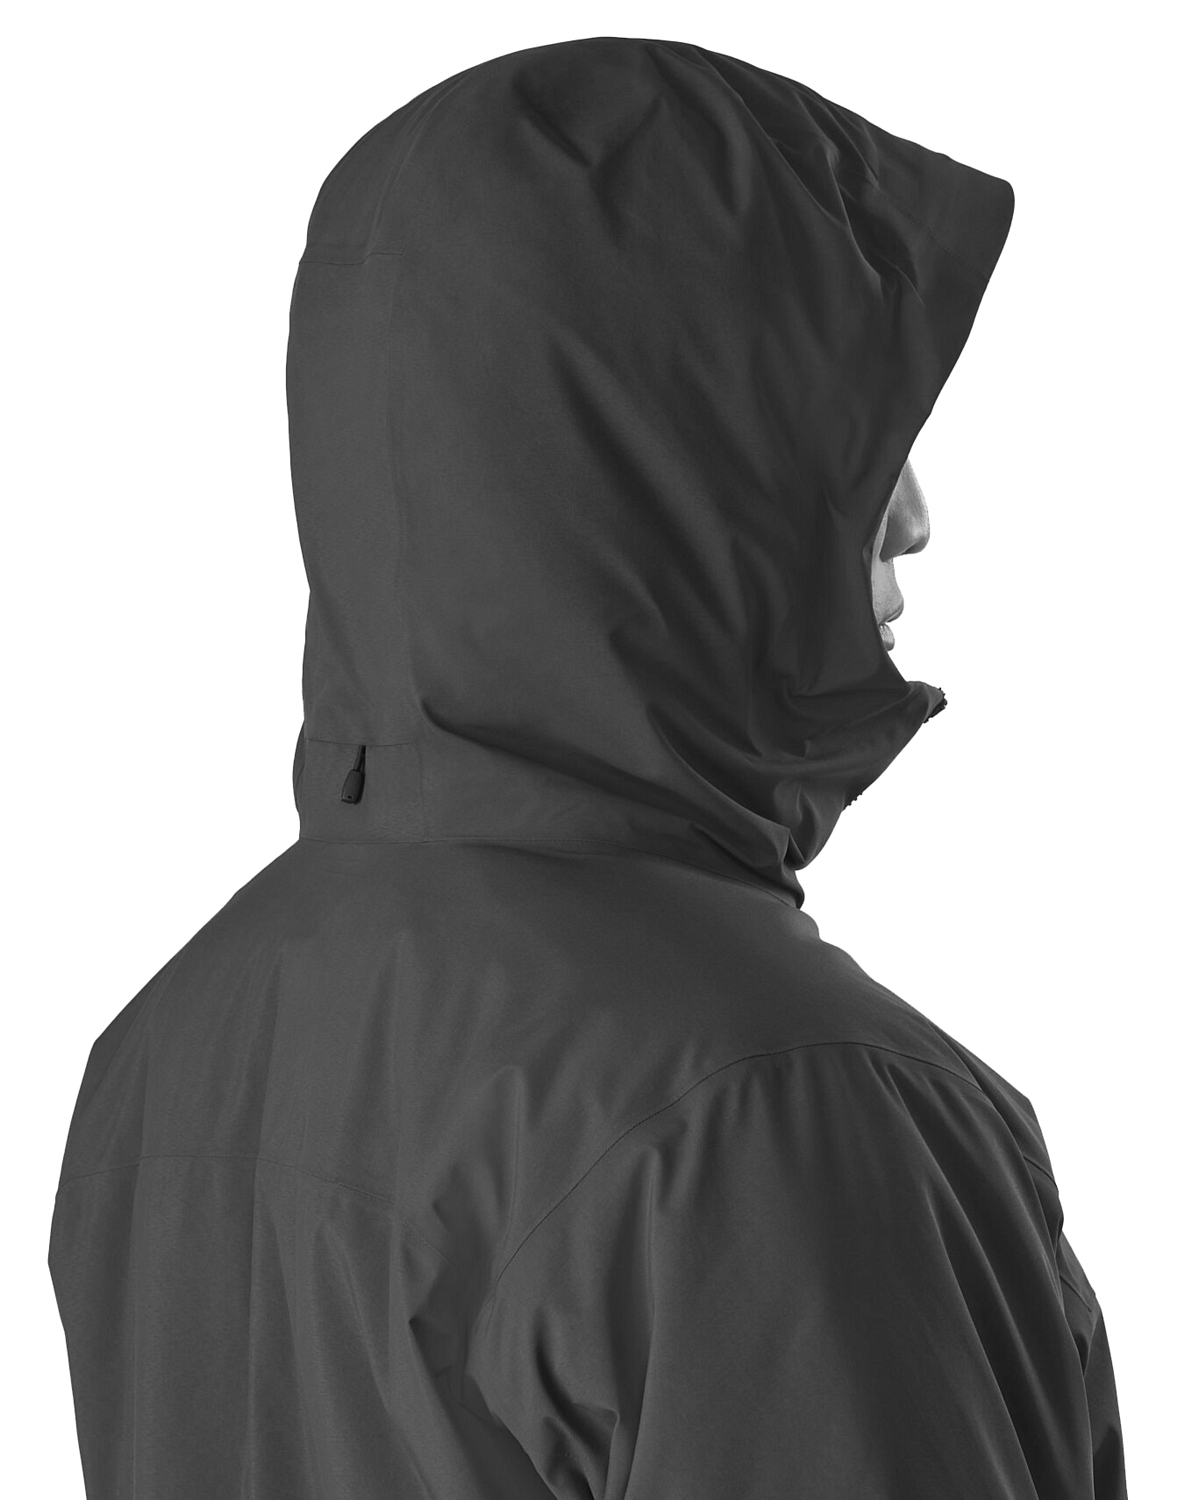 Куртка для активного отдыха Arcteryx 2020-21 Koda Jacket Men's Black